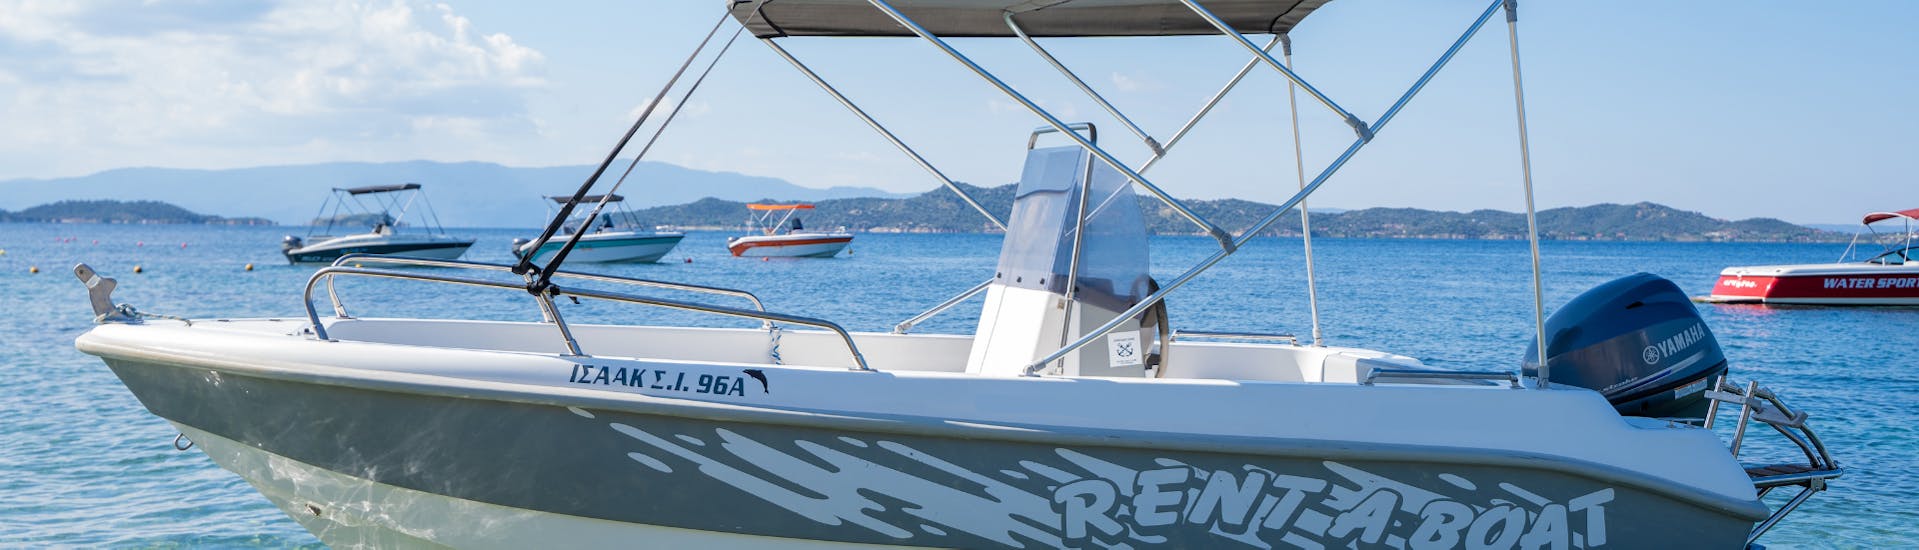 Vista del Poseidonas durante il Noleggio barca a Ouranoupoli (fino a 5 persone) senza patente con Poseidon Water Sports Ouranoupoli.